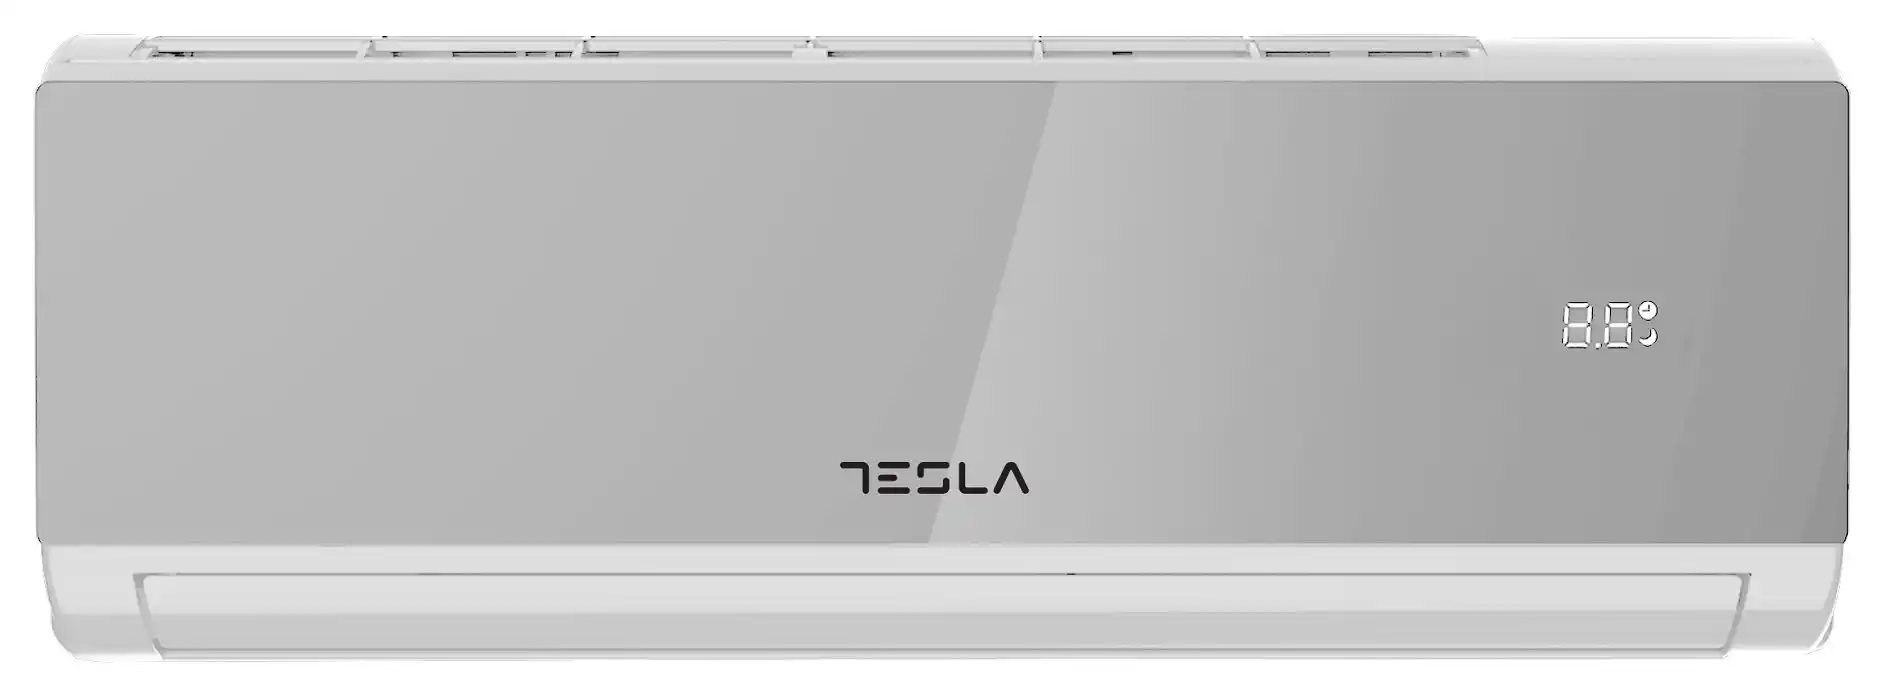 Klima uređaj Tesla inverter TT34EX82SM-1232IAW